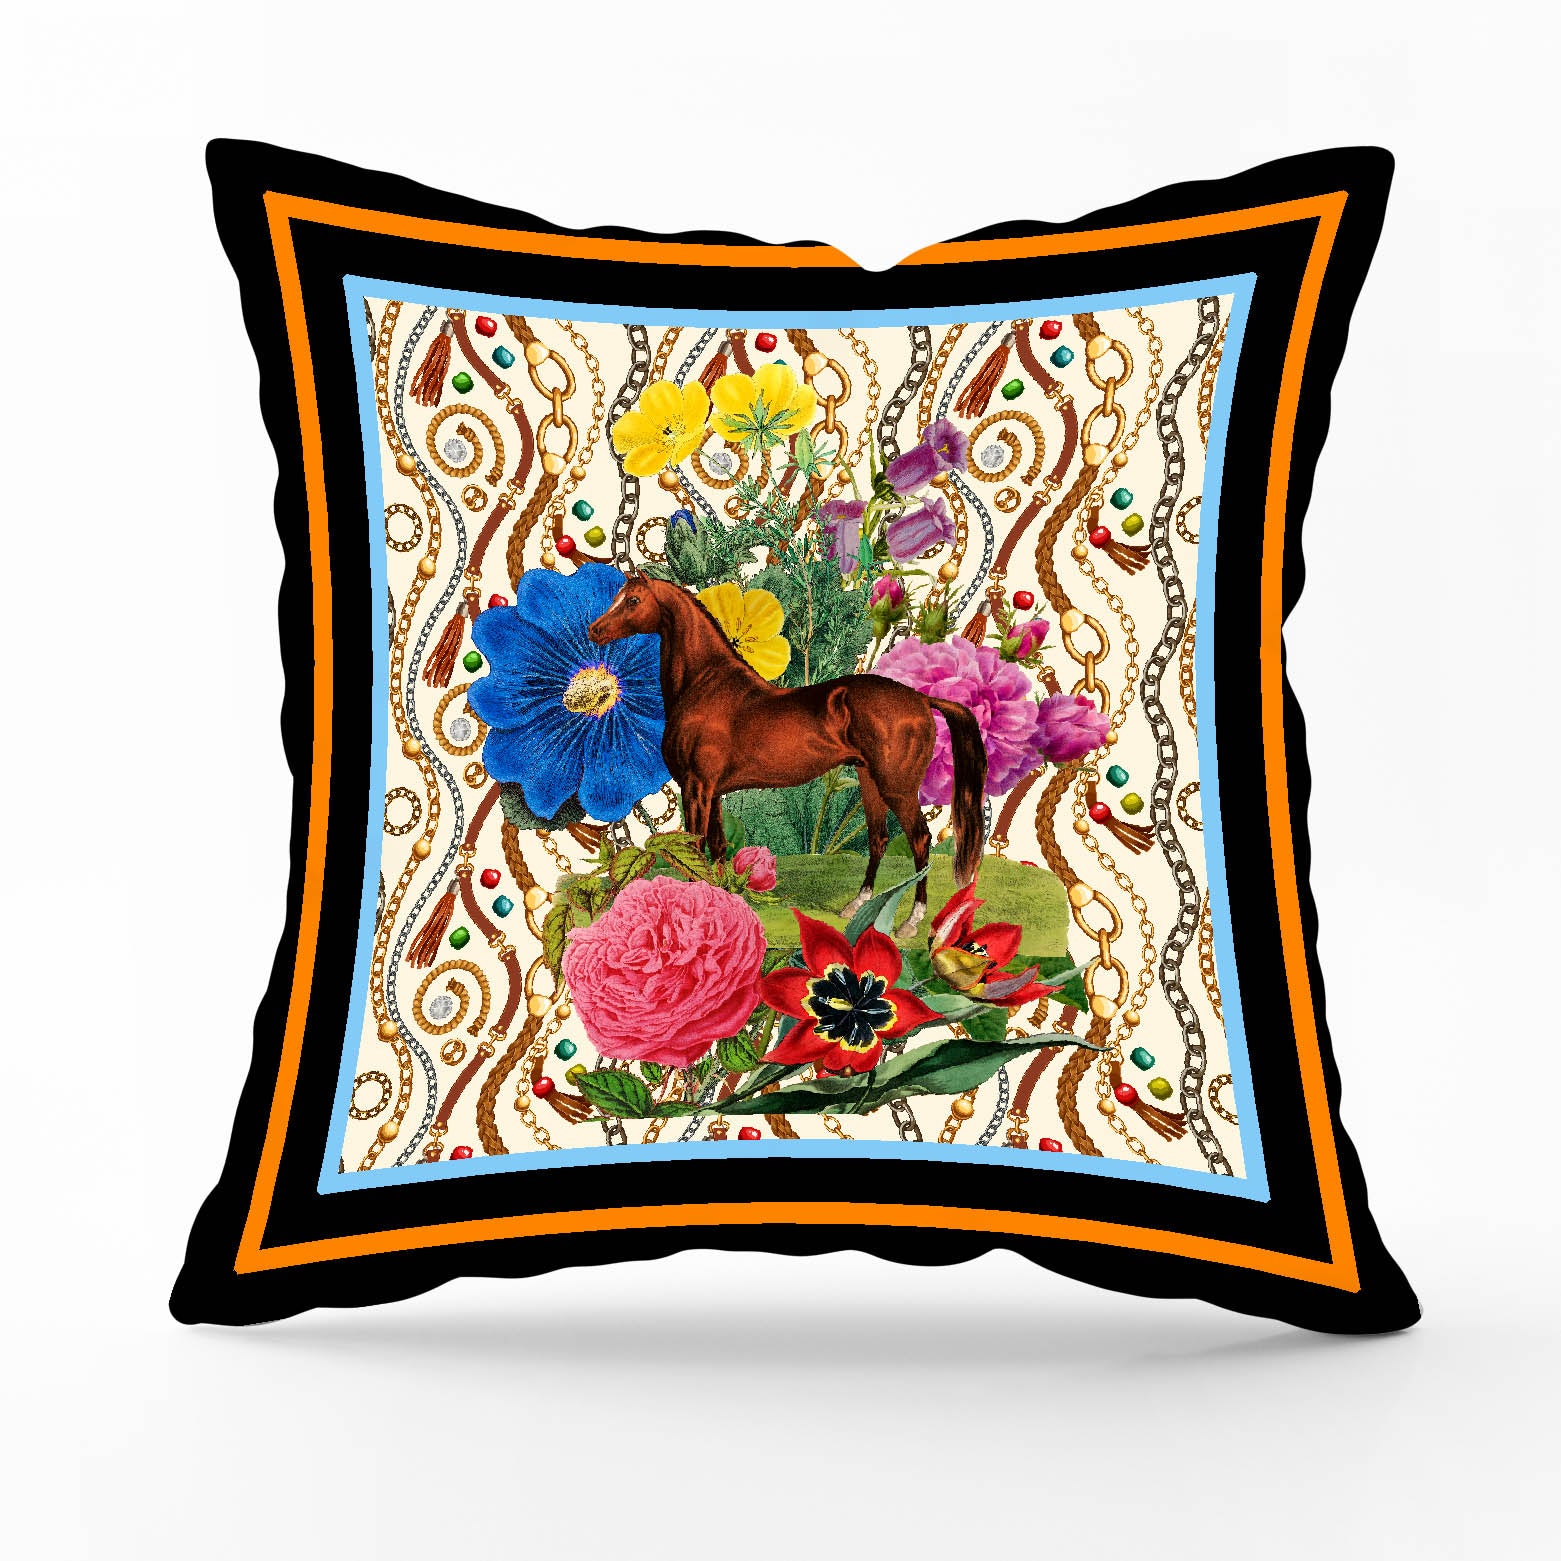 mouchkine paris housse de coussin en velour cheval et fleurs chic cushions cover luxury